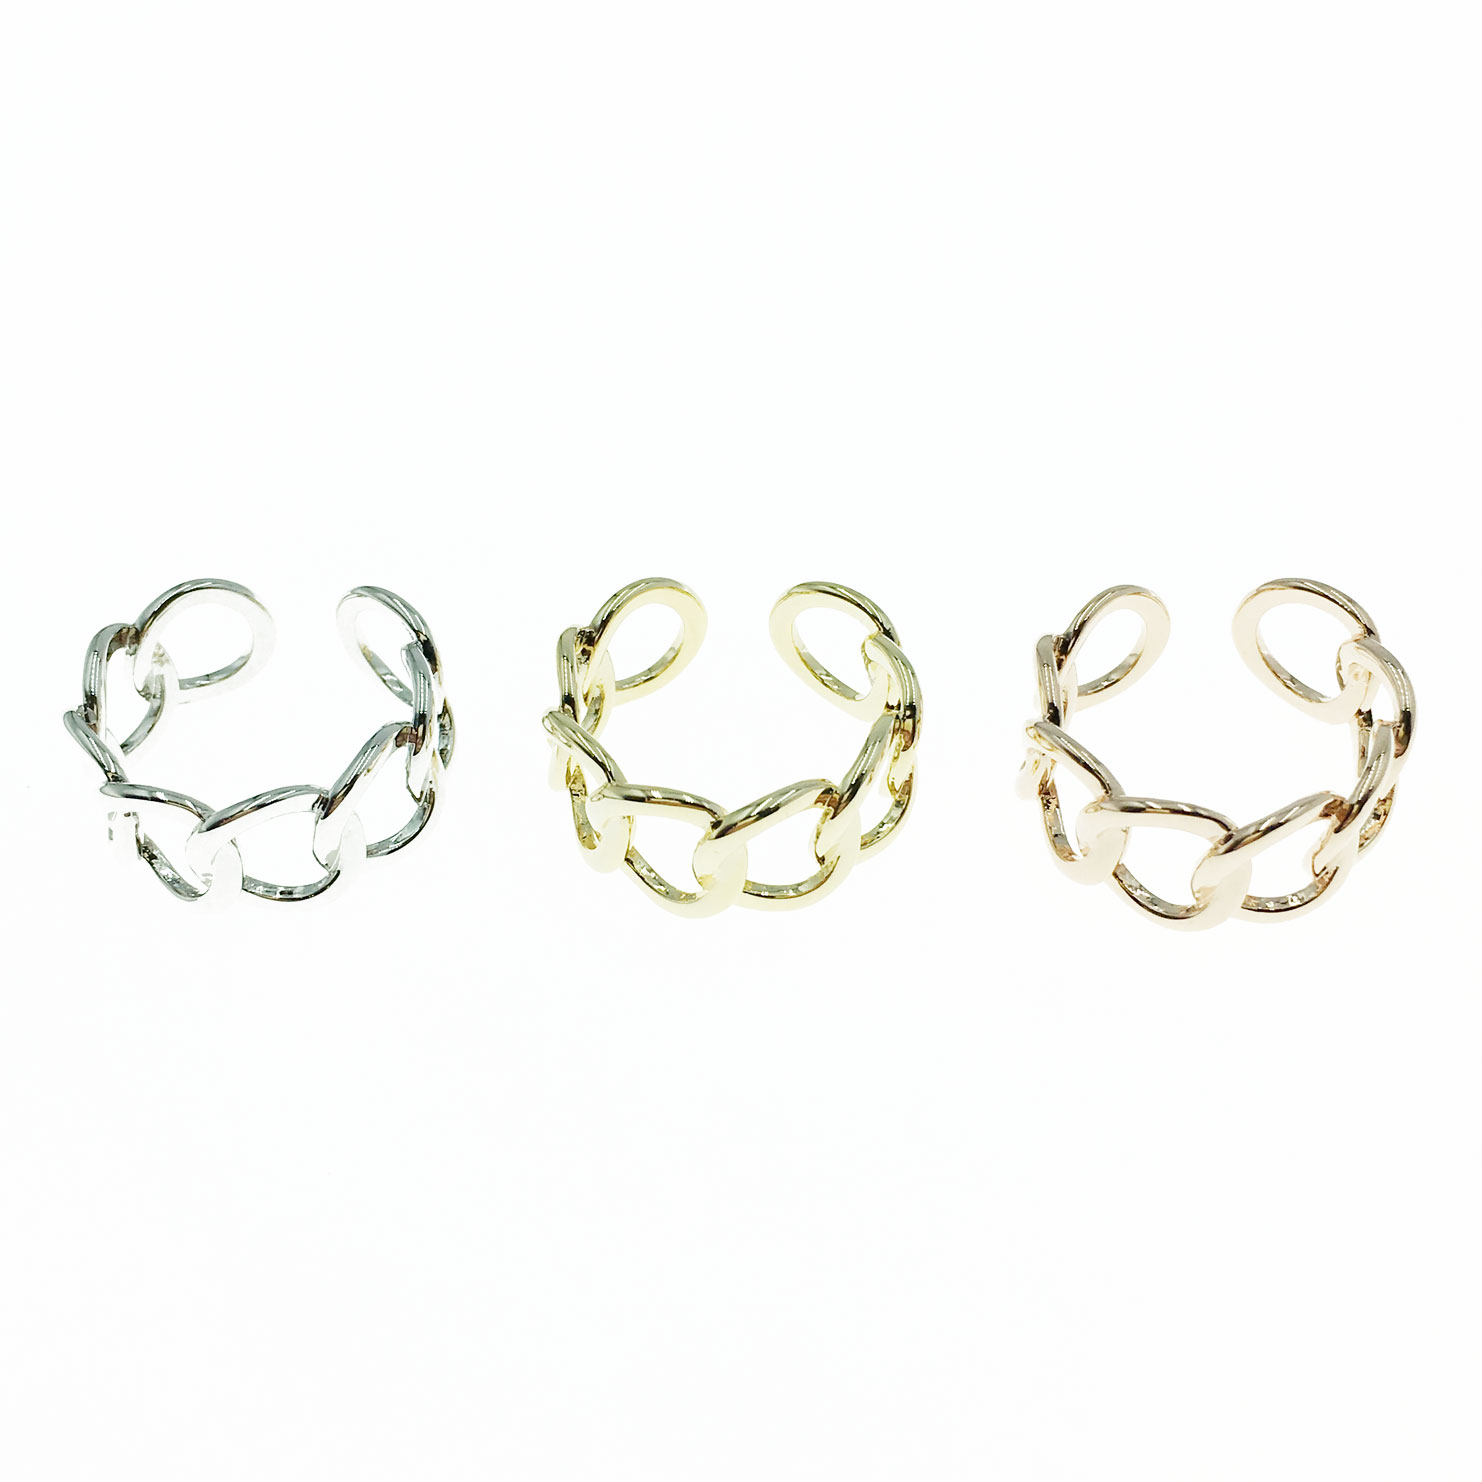 韓國 金屬 鍊條 三色 明星款飾品 可調式 戒指